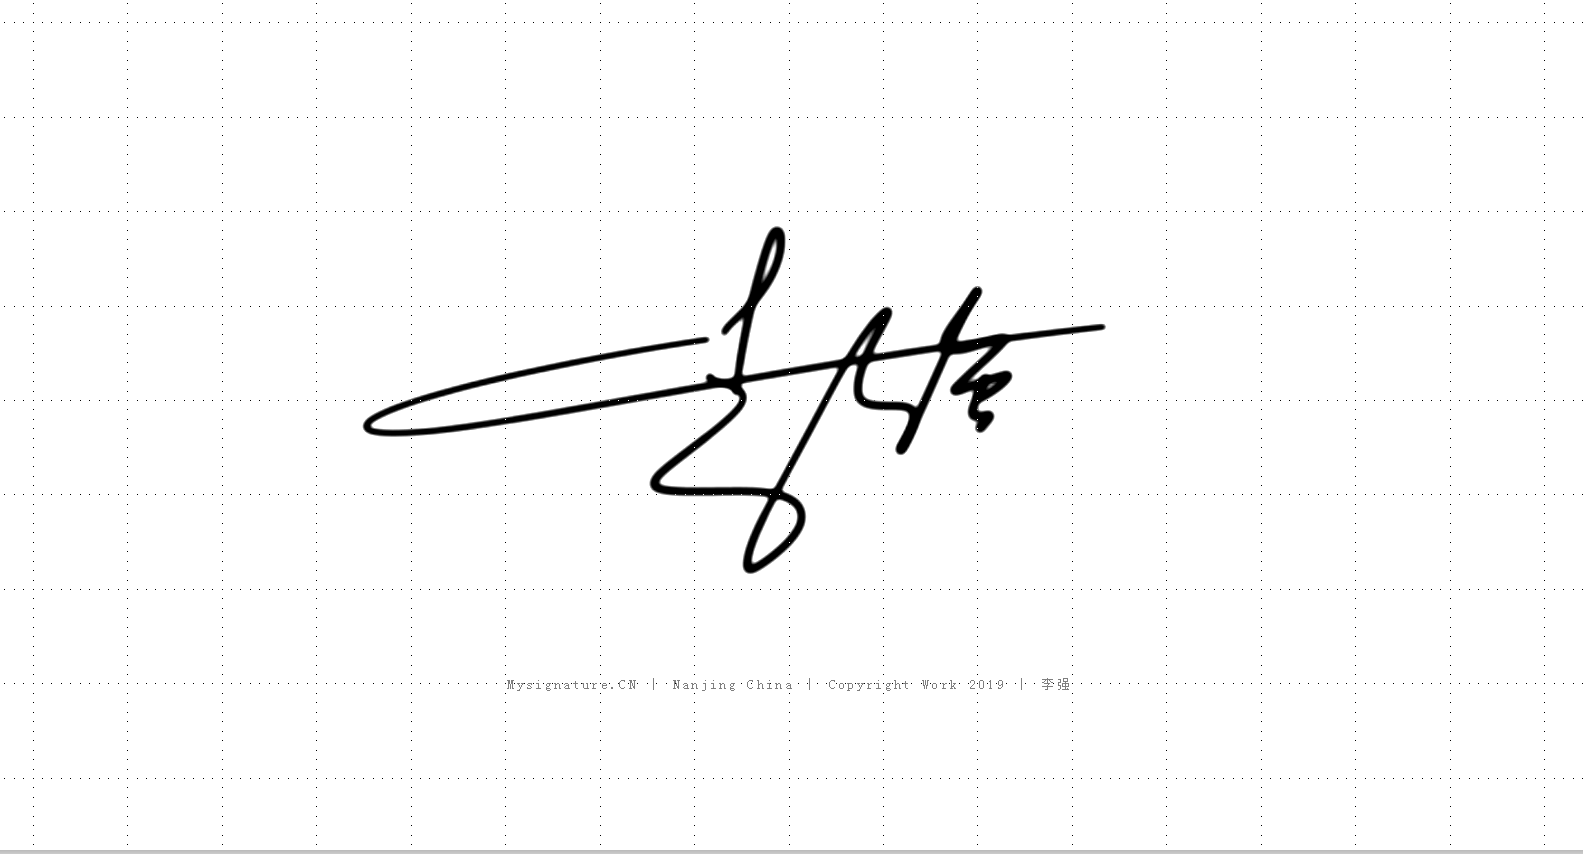 中文签名设计丨南京孙老师签名设计作品丨个性签名